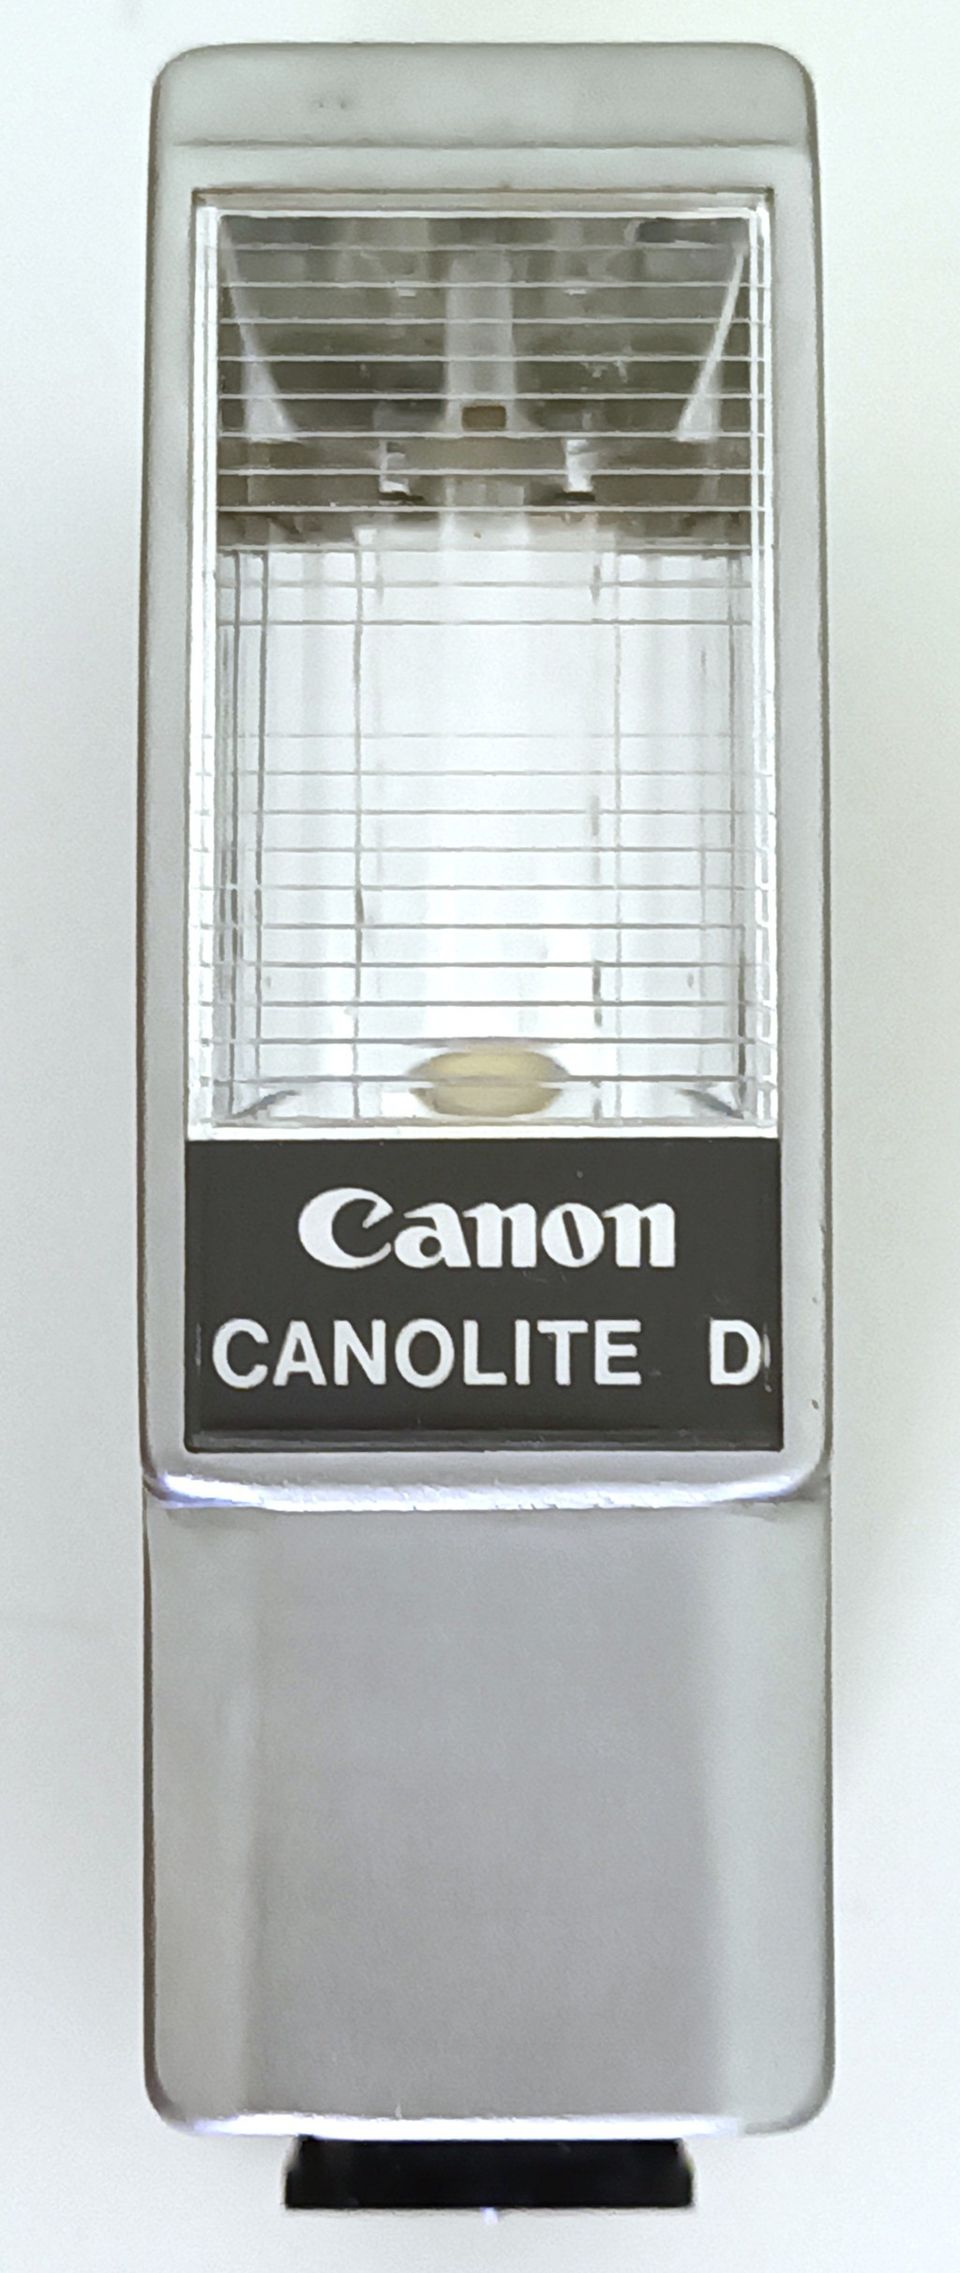 Canon Canolite D salama Canonet / QL17 / QL19